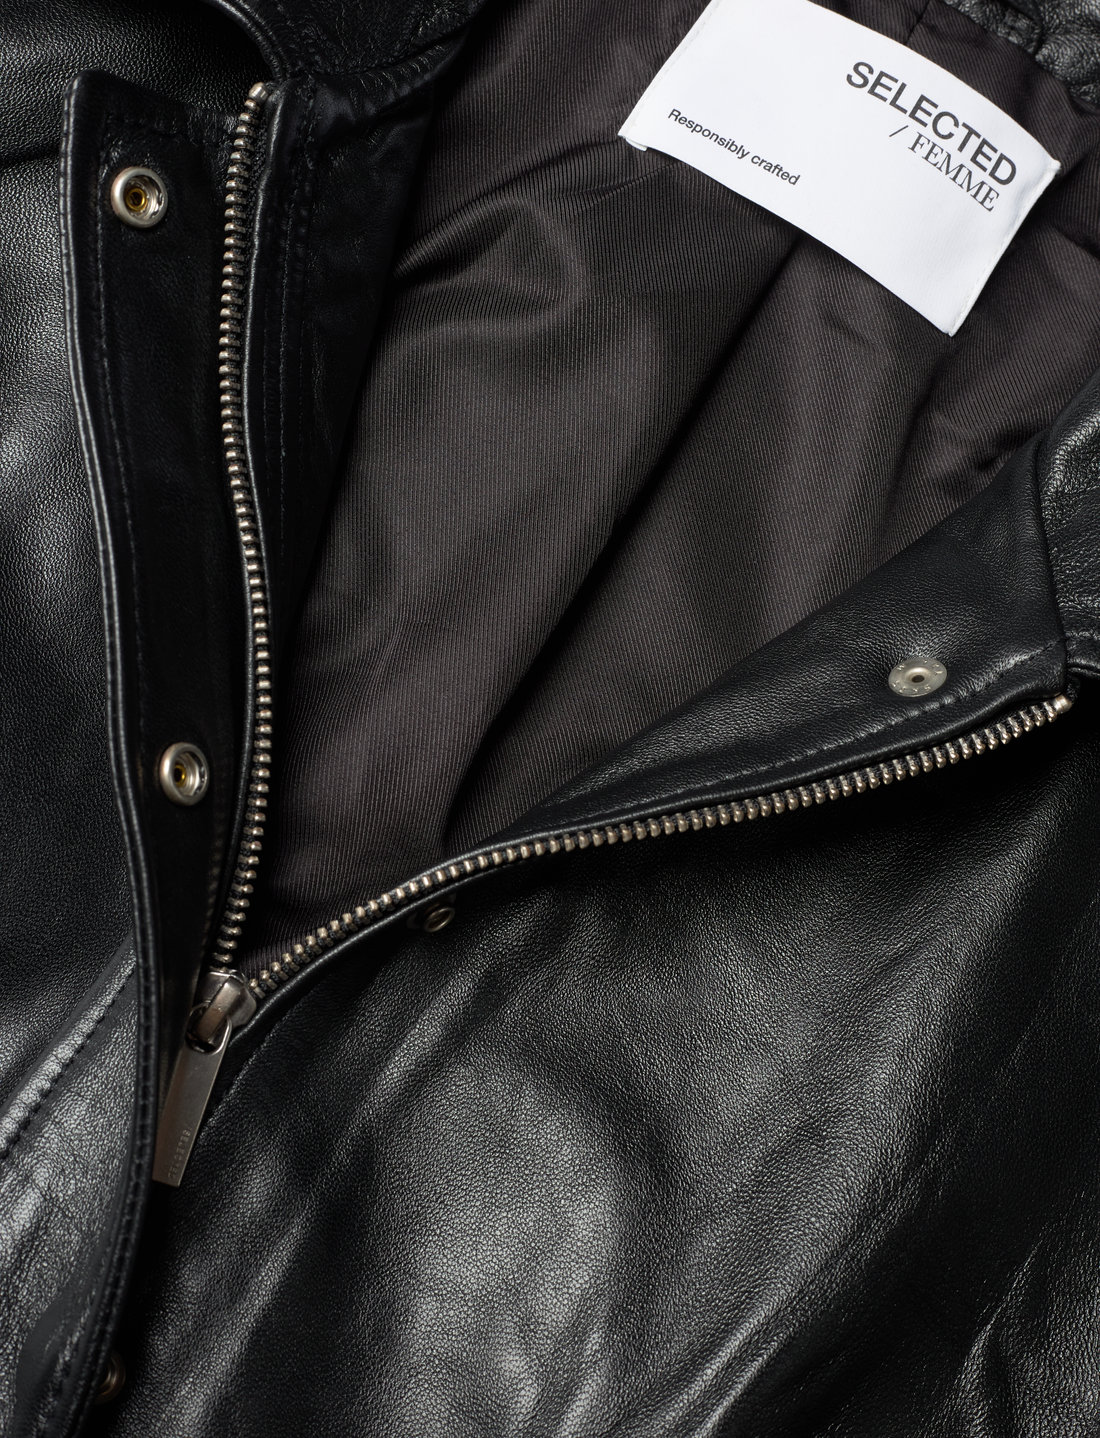 efterfølger Sorg at tilføje Selected Femme Slfbecky Leather Bomber Jacket - 2199 kr. Køb Læderjakker  fra Selected Femme online på Boozt.com. Hurtig levering & nem retur